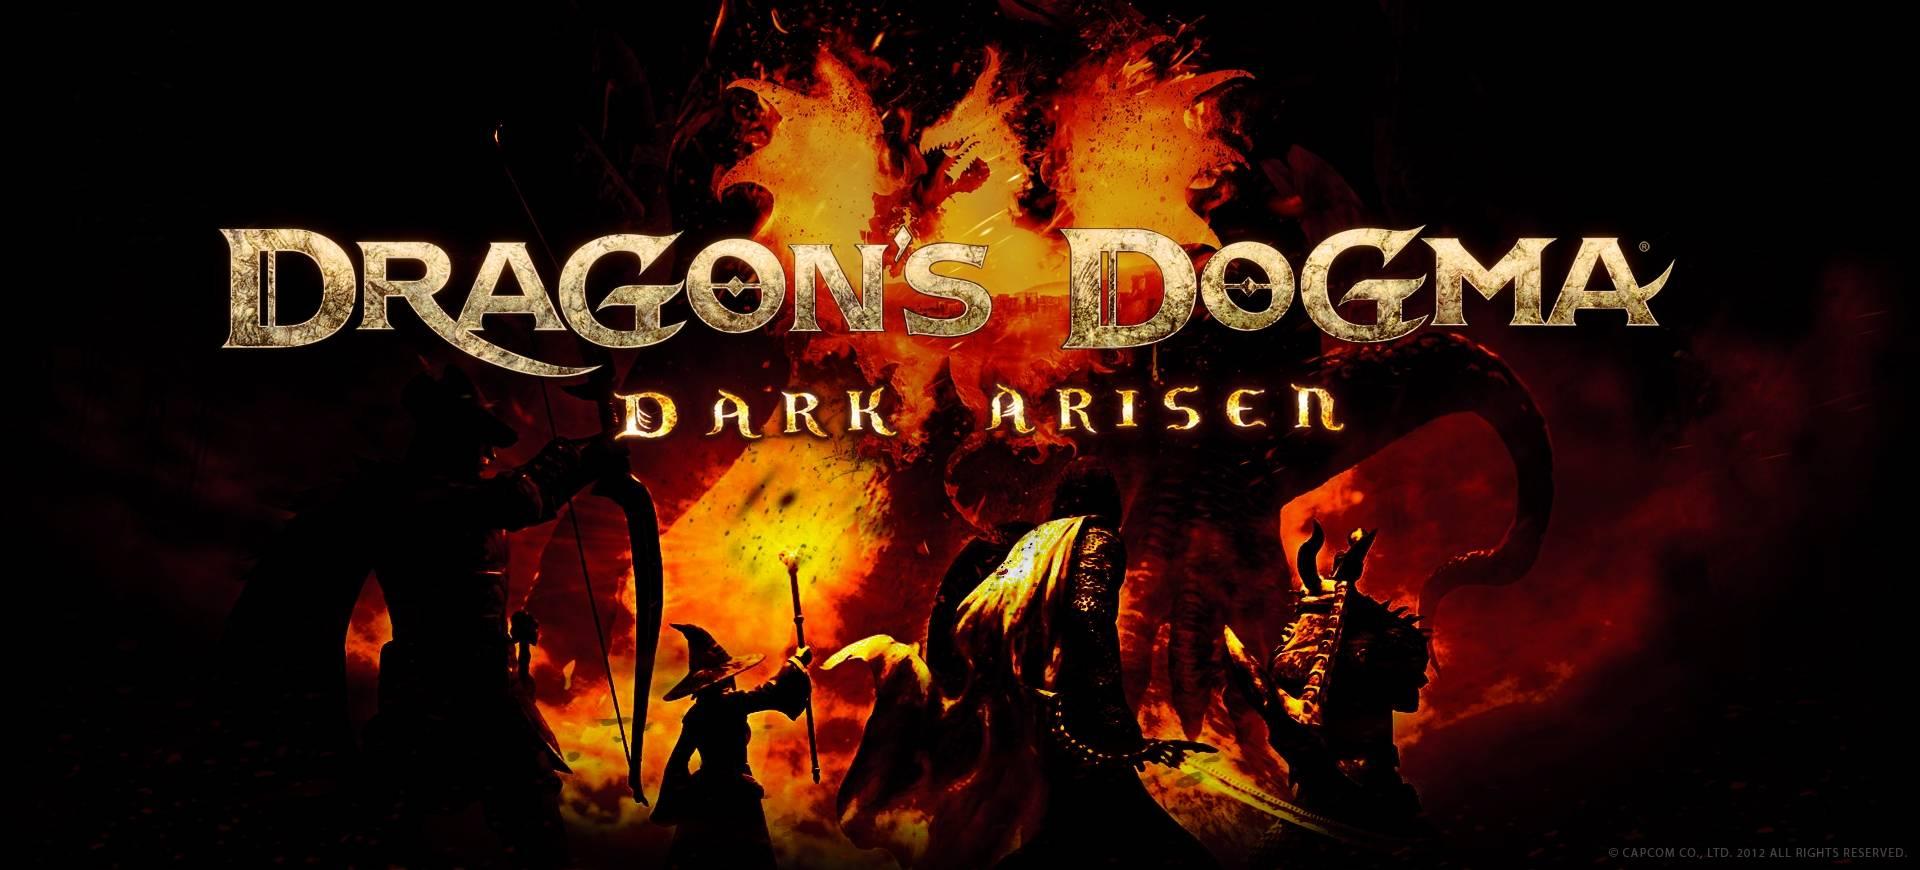 Sẽ có một sự kiện họp báo riêng dành cho Dragon’s Dogma vào cuối tuần này